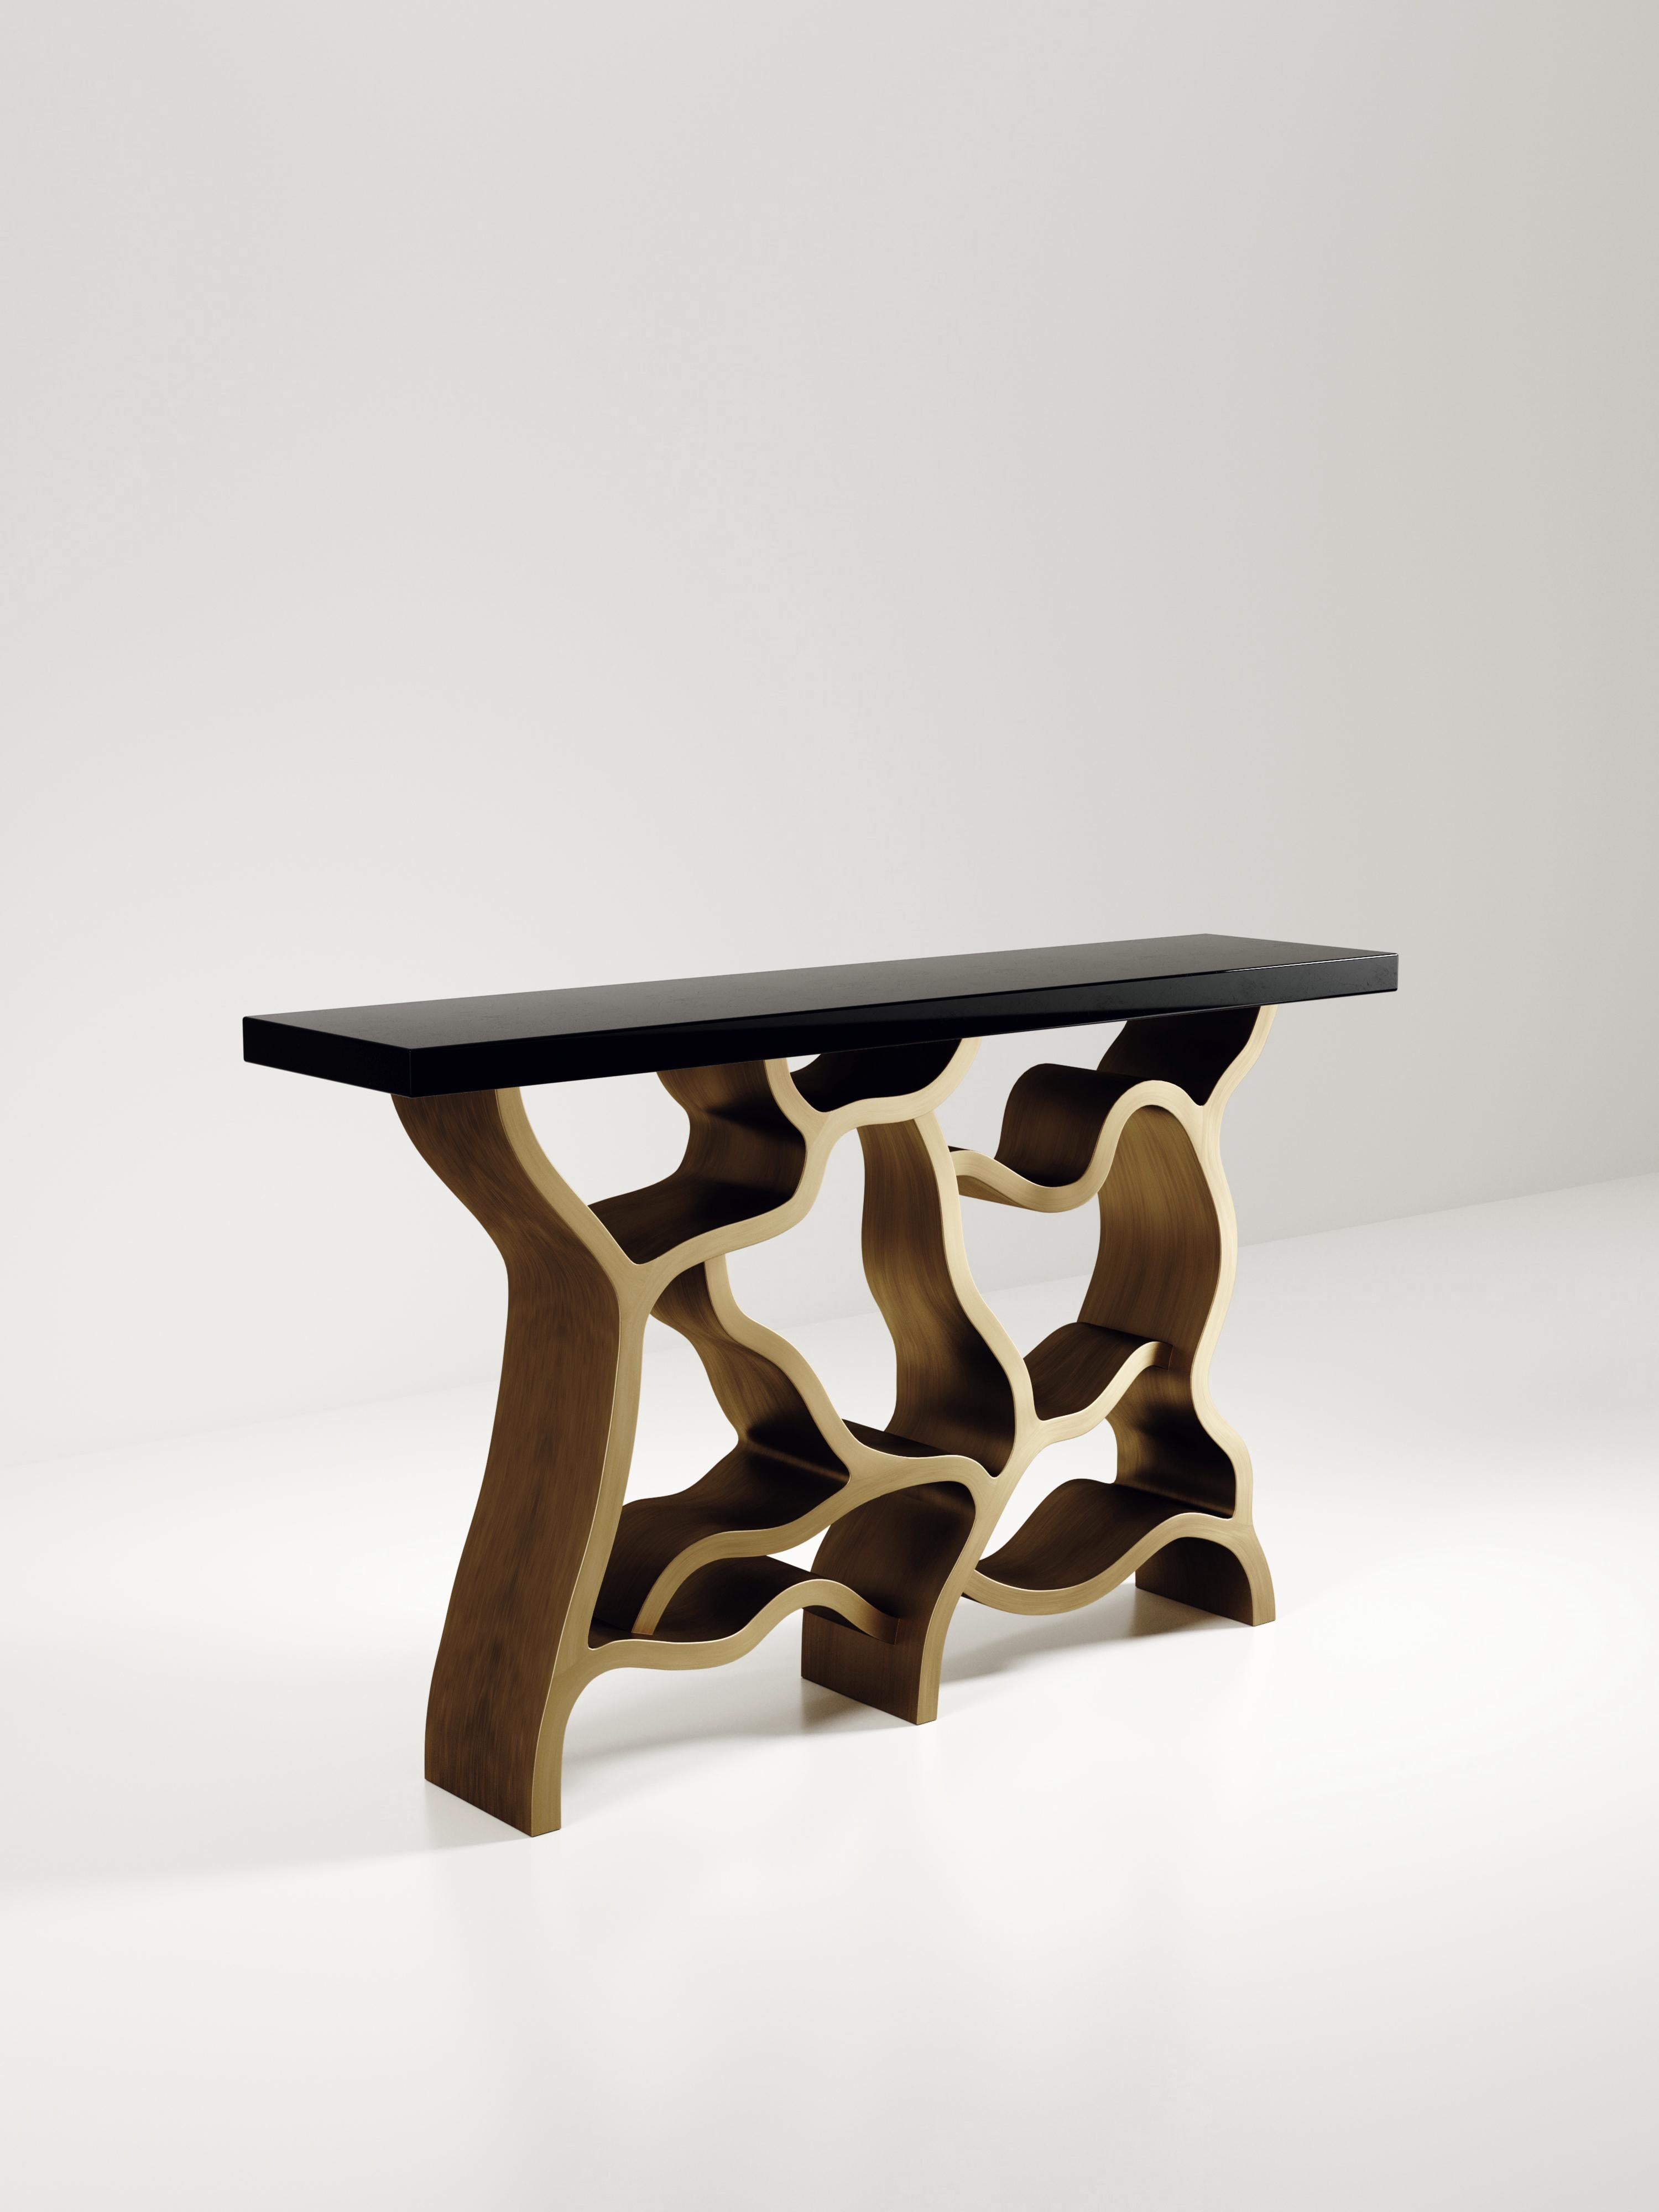 La table console Leaf de Kifu Paris est une pièce spectaculaire et organique. Le plateau rectangulaire incrusté de coquilles de stylo noires repose sur un socle en laiton bronze-patine qui évoque des branches entrelacées. Cette pièce a été conçue